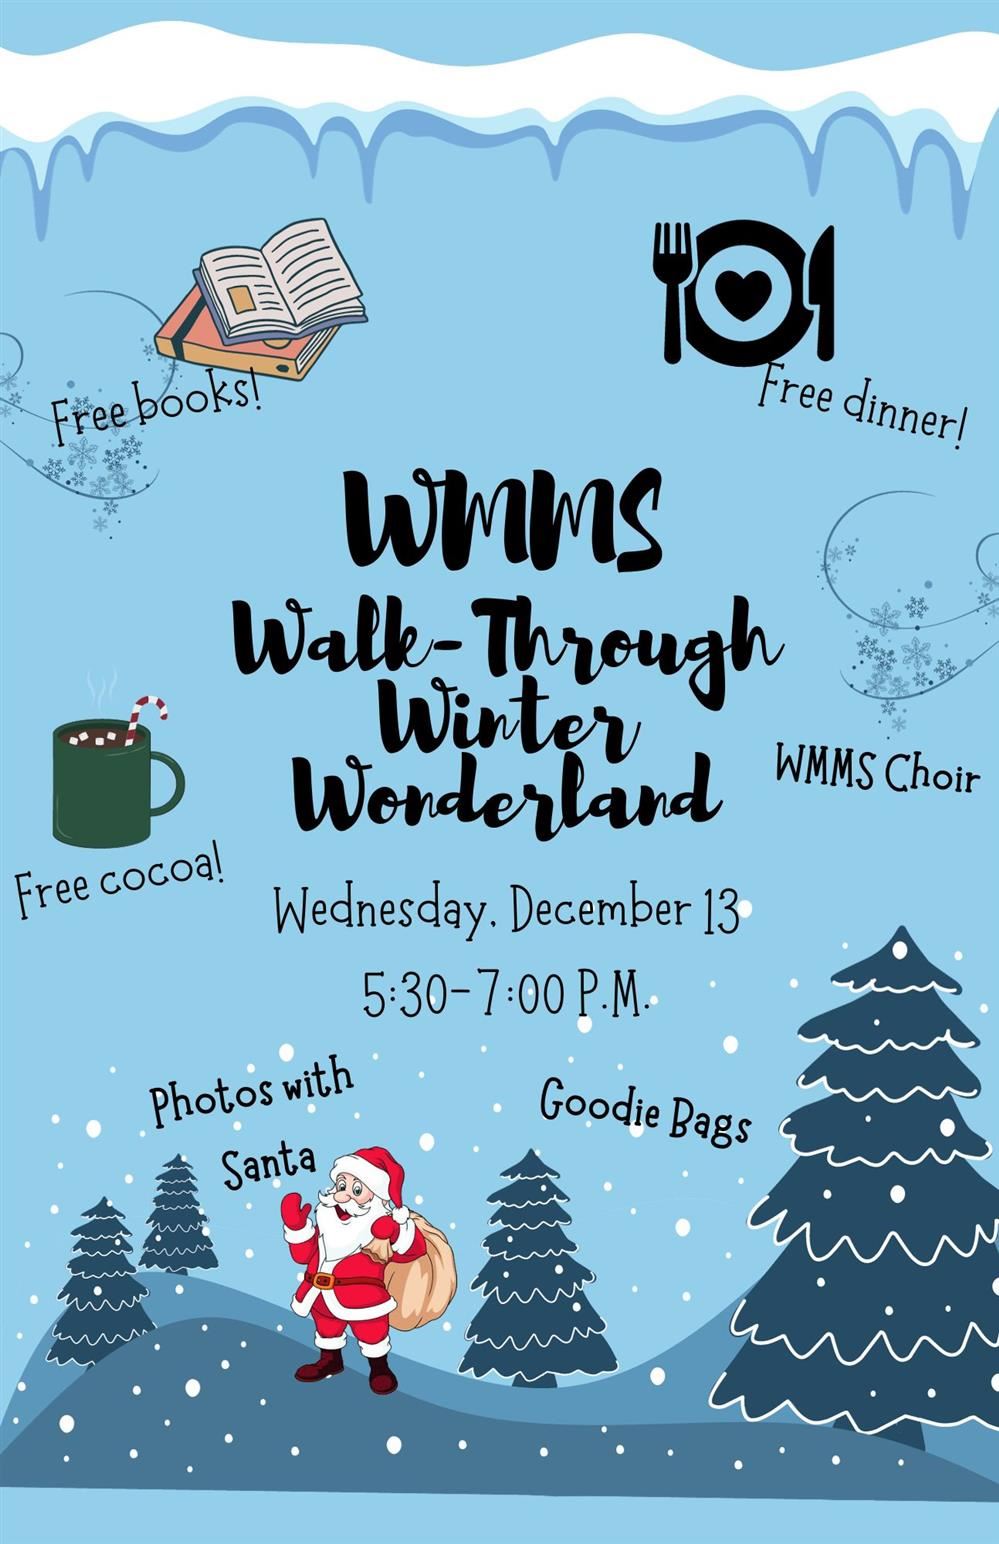 WMMS Walk-Through Winter Wonderland